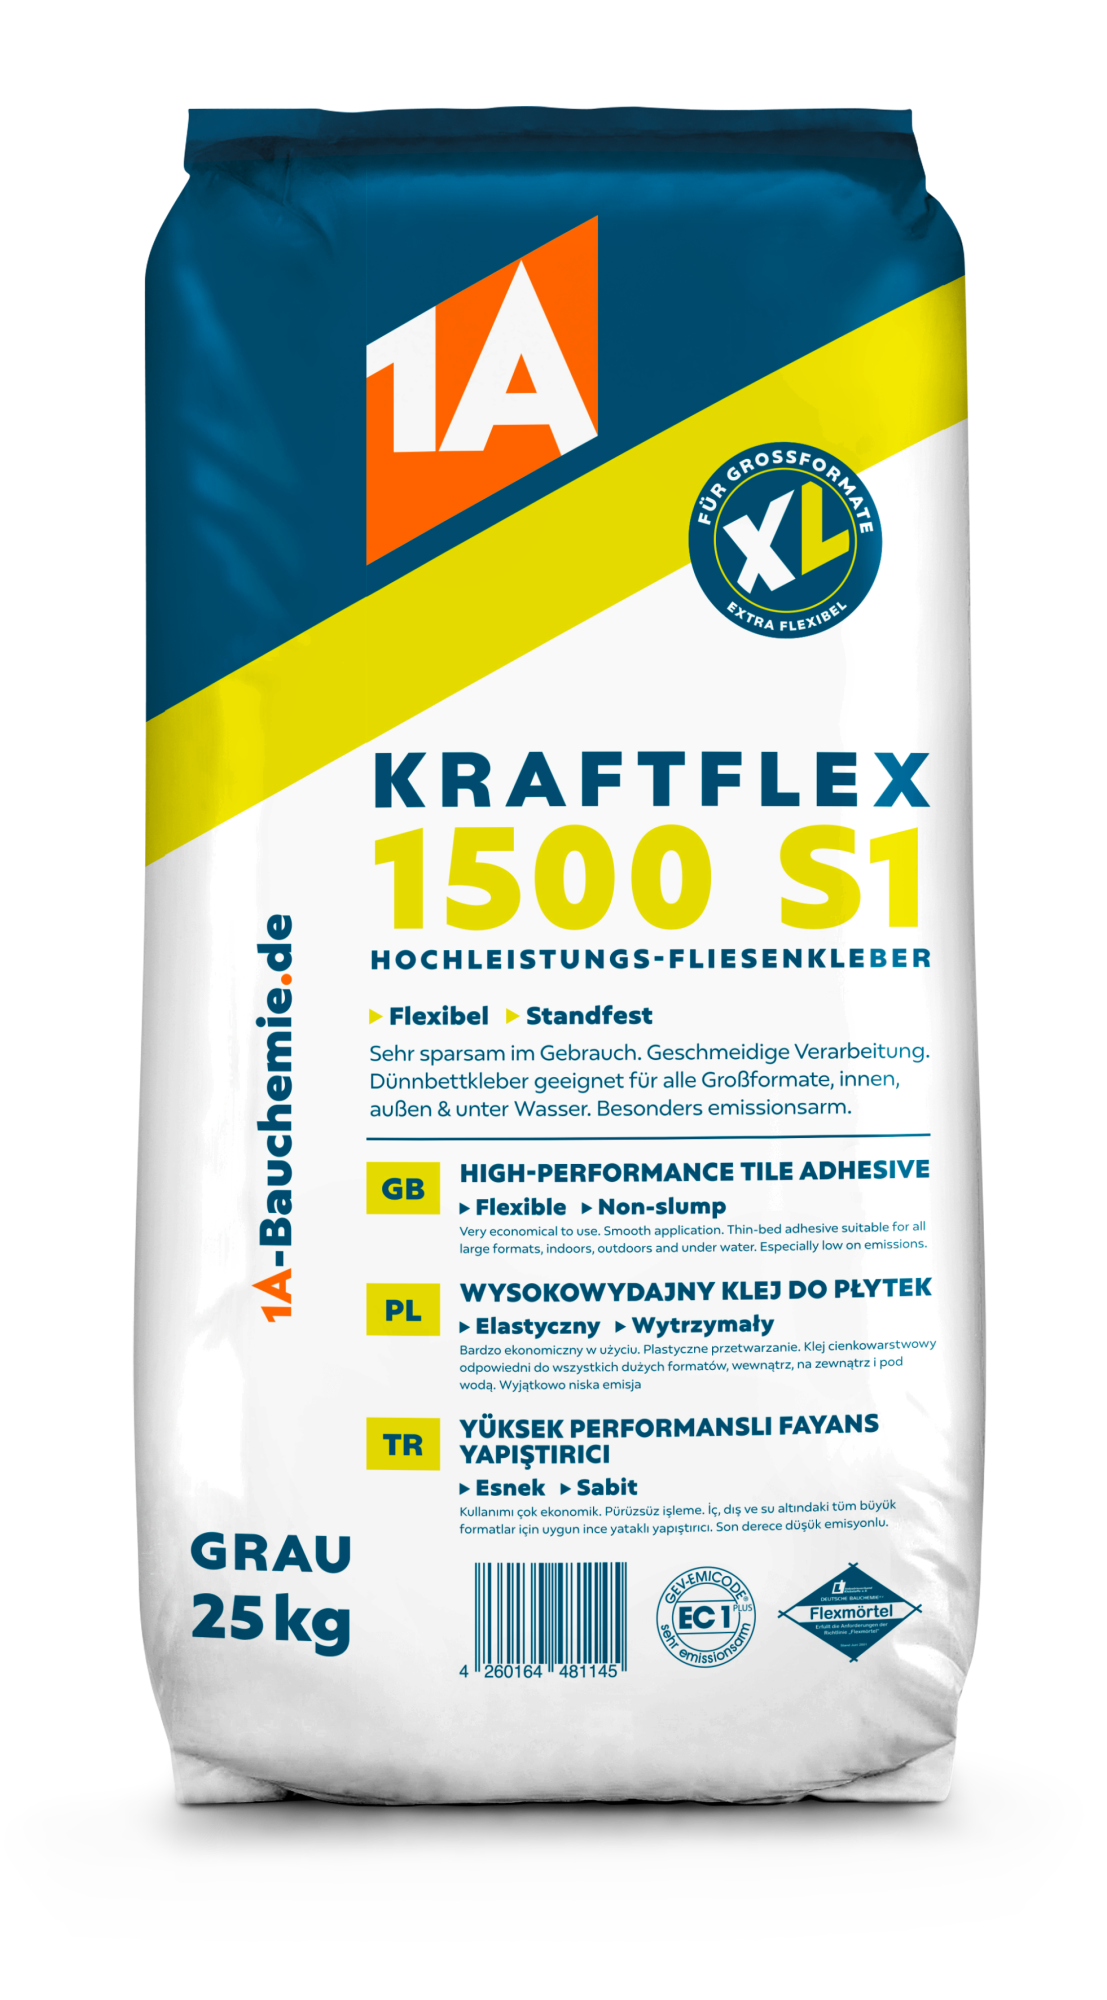 1A KRAFTFLEX 1500 S1 Hochleistungs-Fliesenkleber